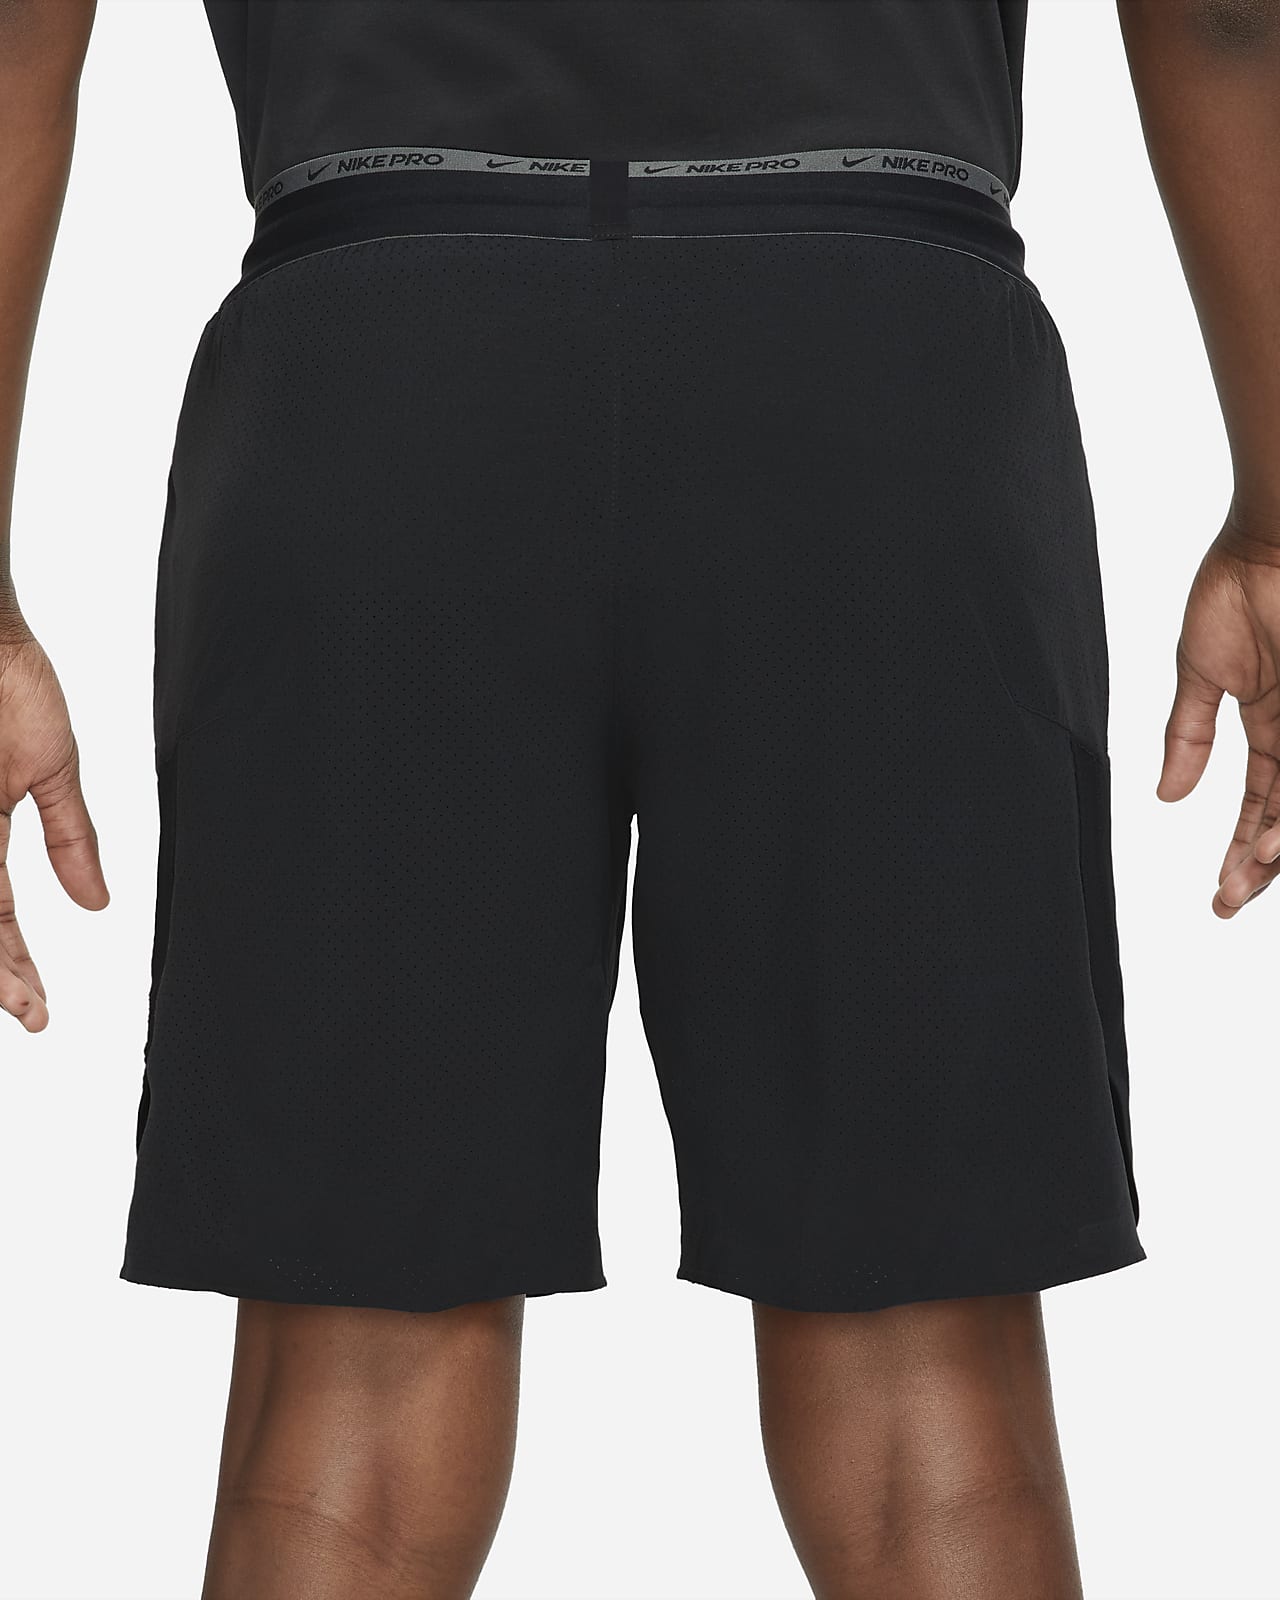 Ju-Sports Compression Shorts, Pro Line Motion Pro Flexcup S